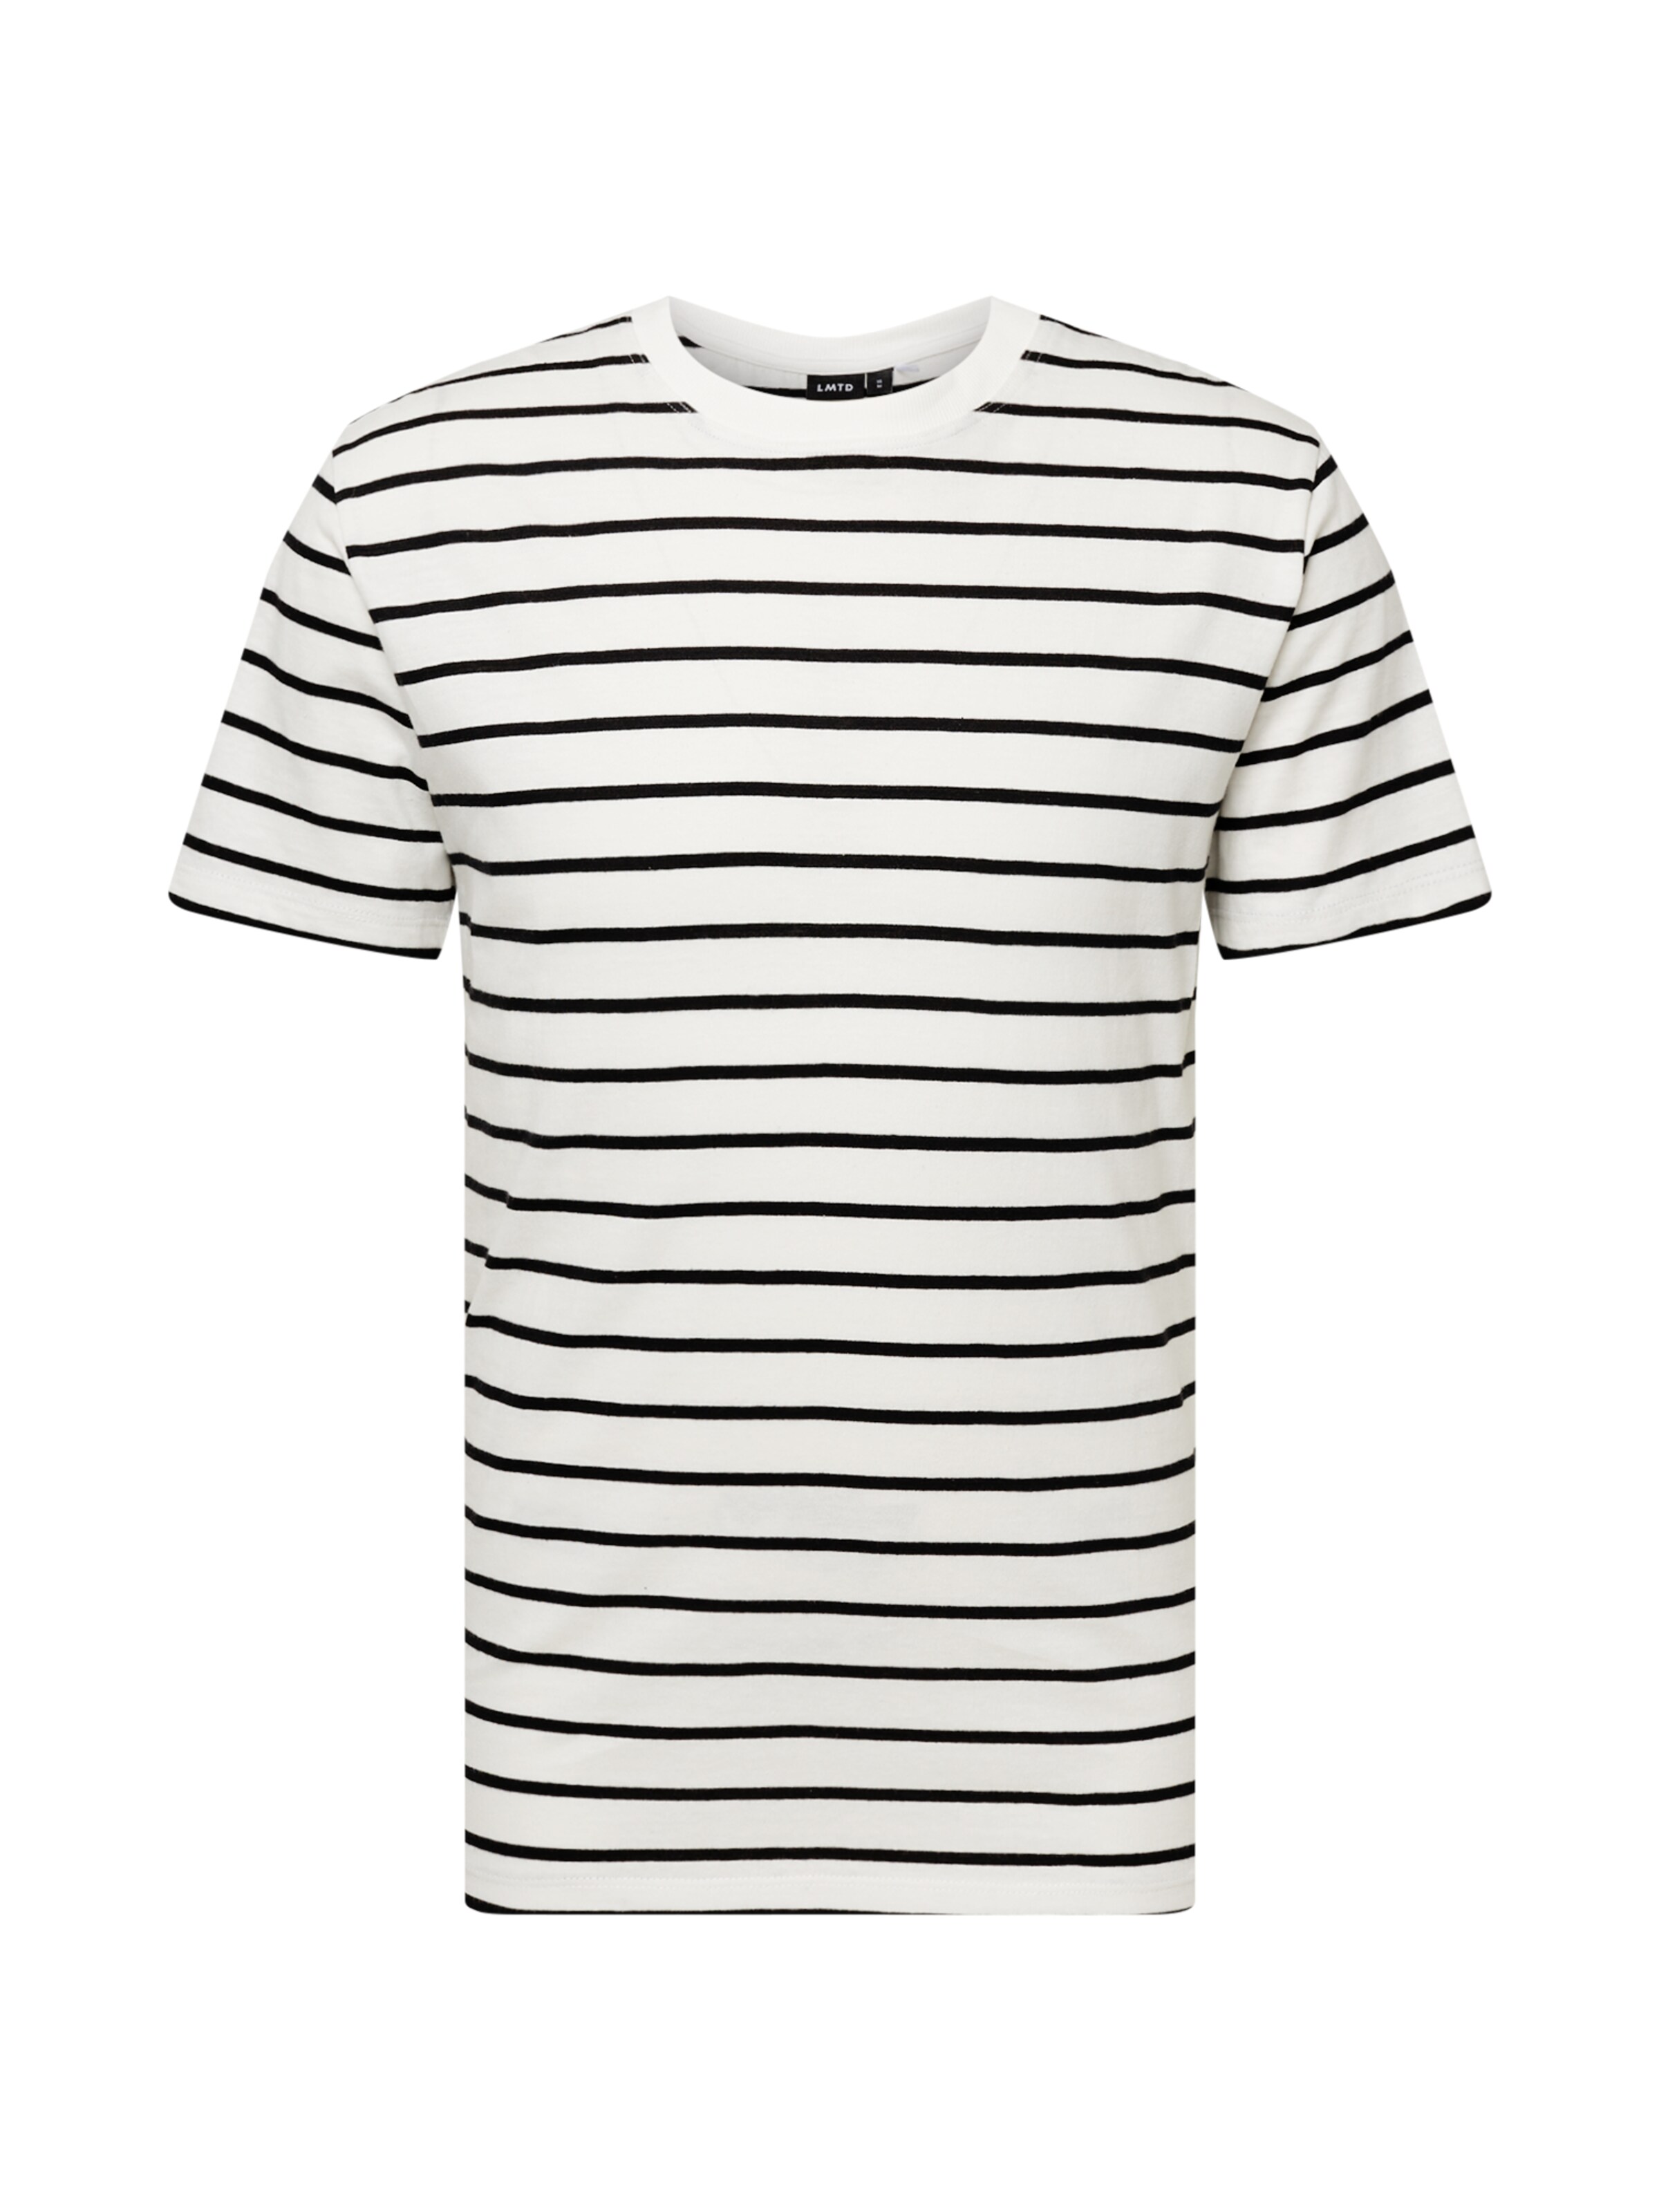 Männer Shirts LMTD T-Shirt 'KAILOR' in Schwarz, Weiß - MK83175